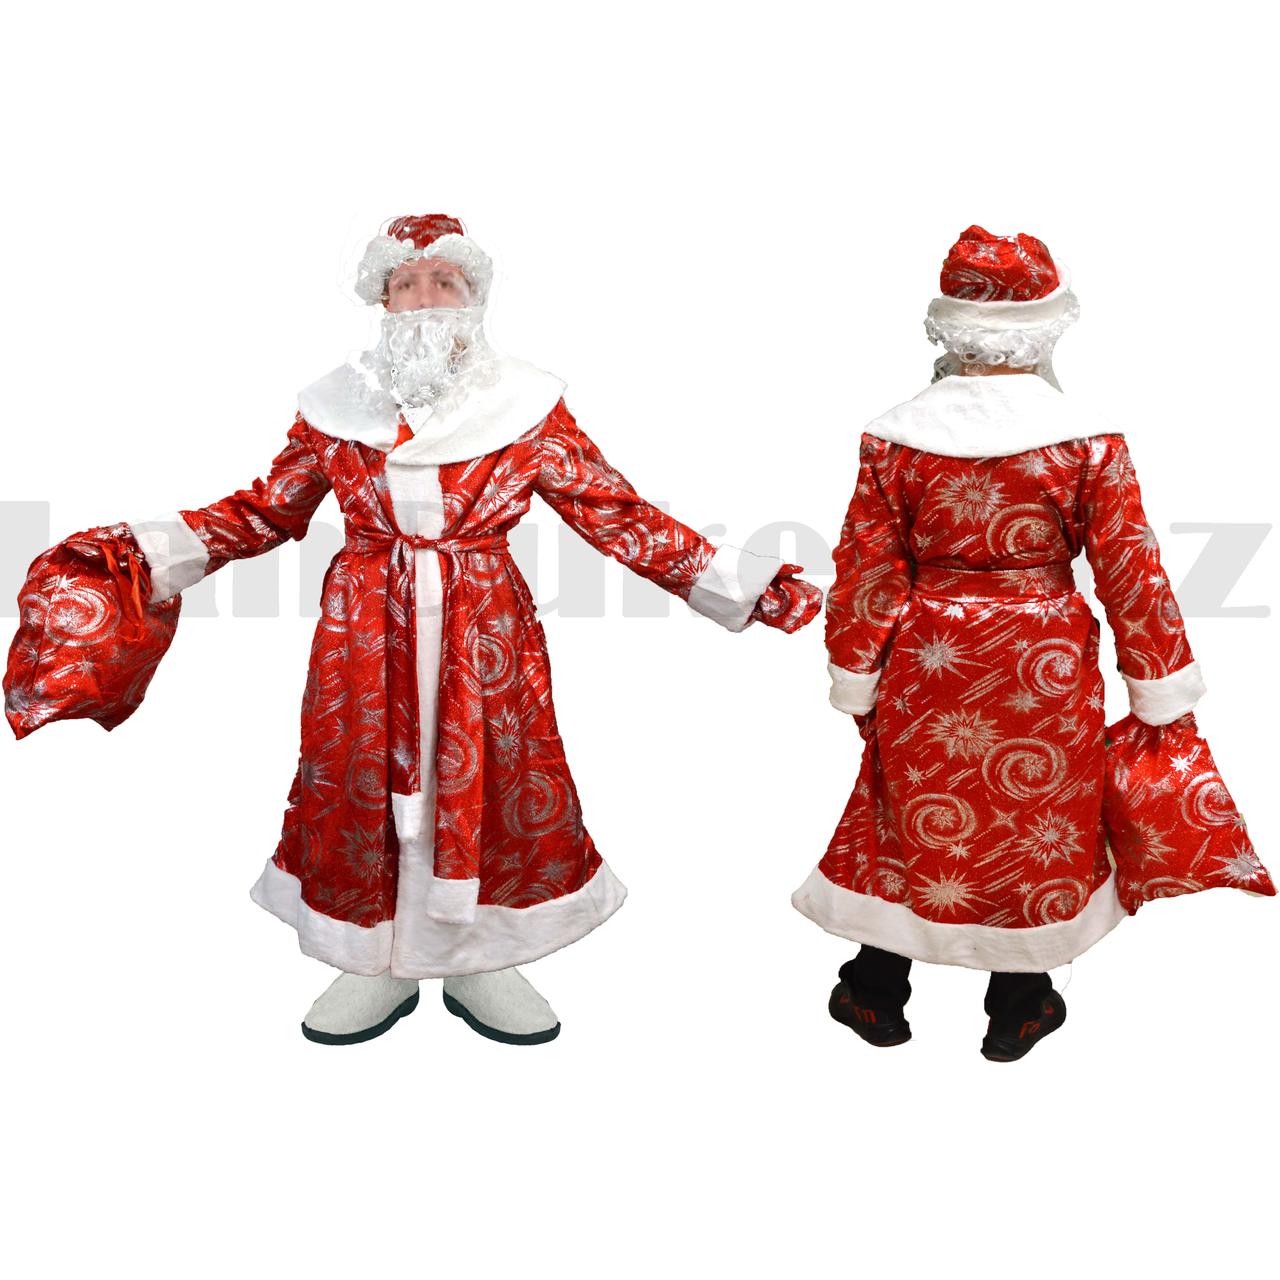 Костюм карнавальный взрослый Деда Мороза Аяз Ата красный с белой окантовкой, фото 1